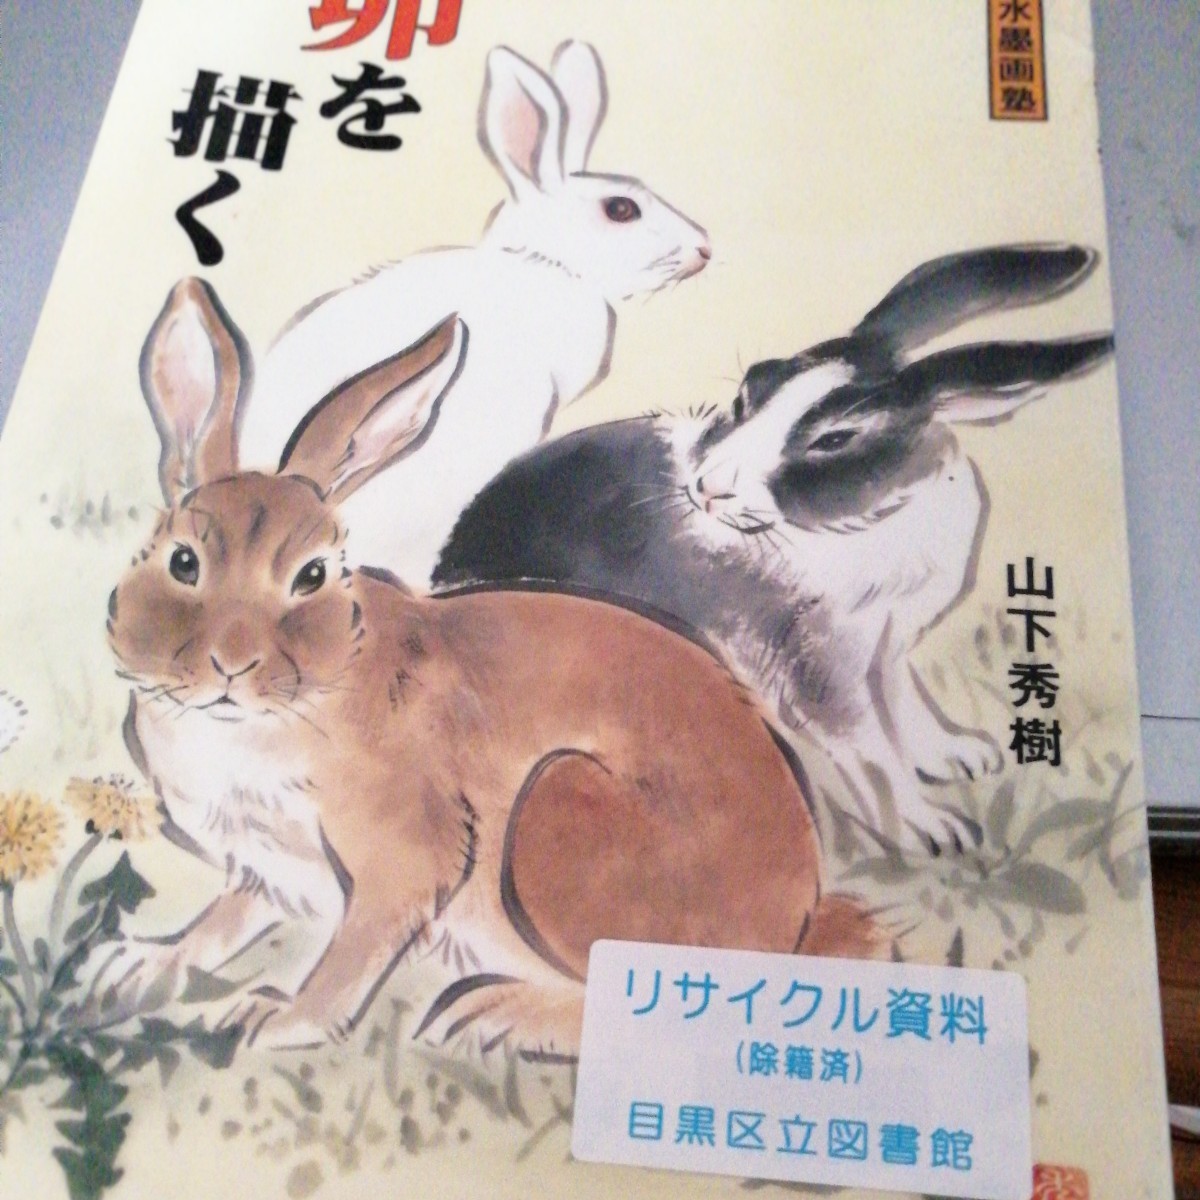 Dessiner un lapin école de peinture à l'encre/Hideki Yamashita (auteur), art, divertissement, peinture, Livre technique